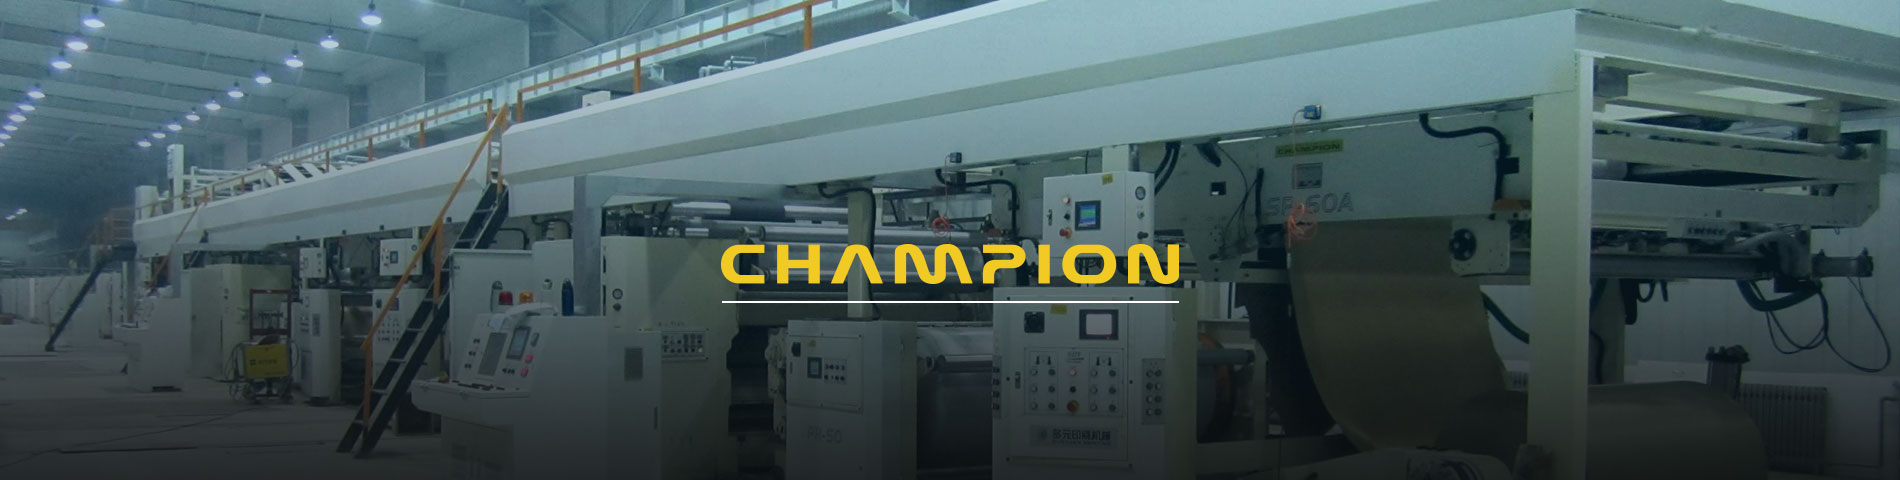 Champion Wellpappe ist eine professionelle Wellpappe Gerätehersteller